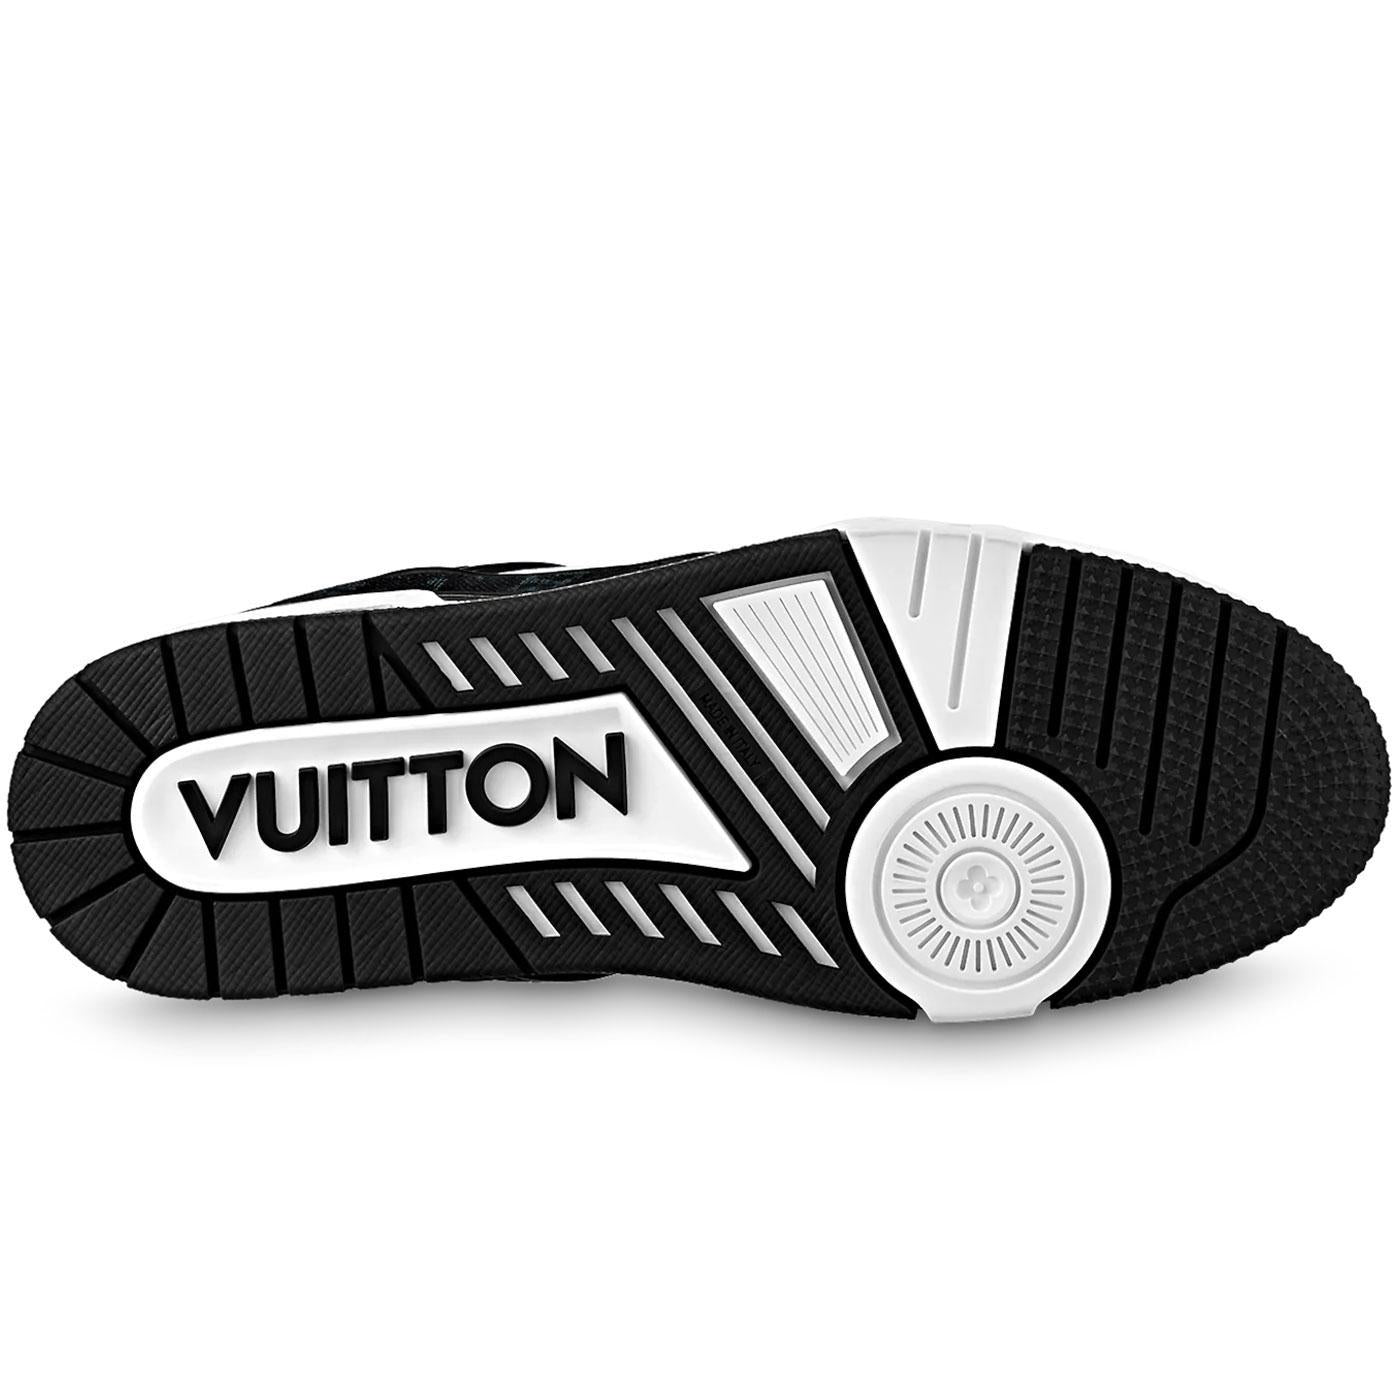 Buy Louis Vuitton Trainer 'Denim Noir' - 1A9JG6